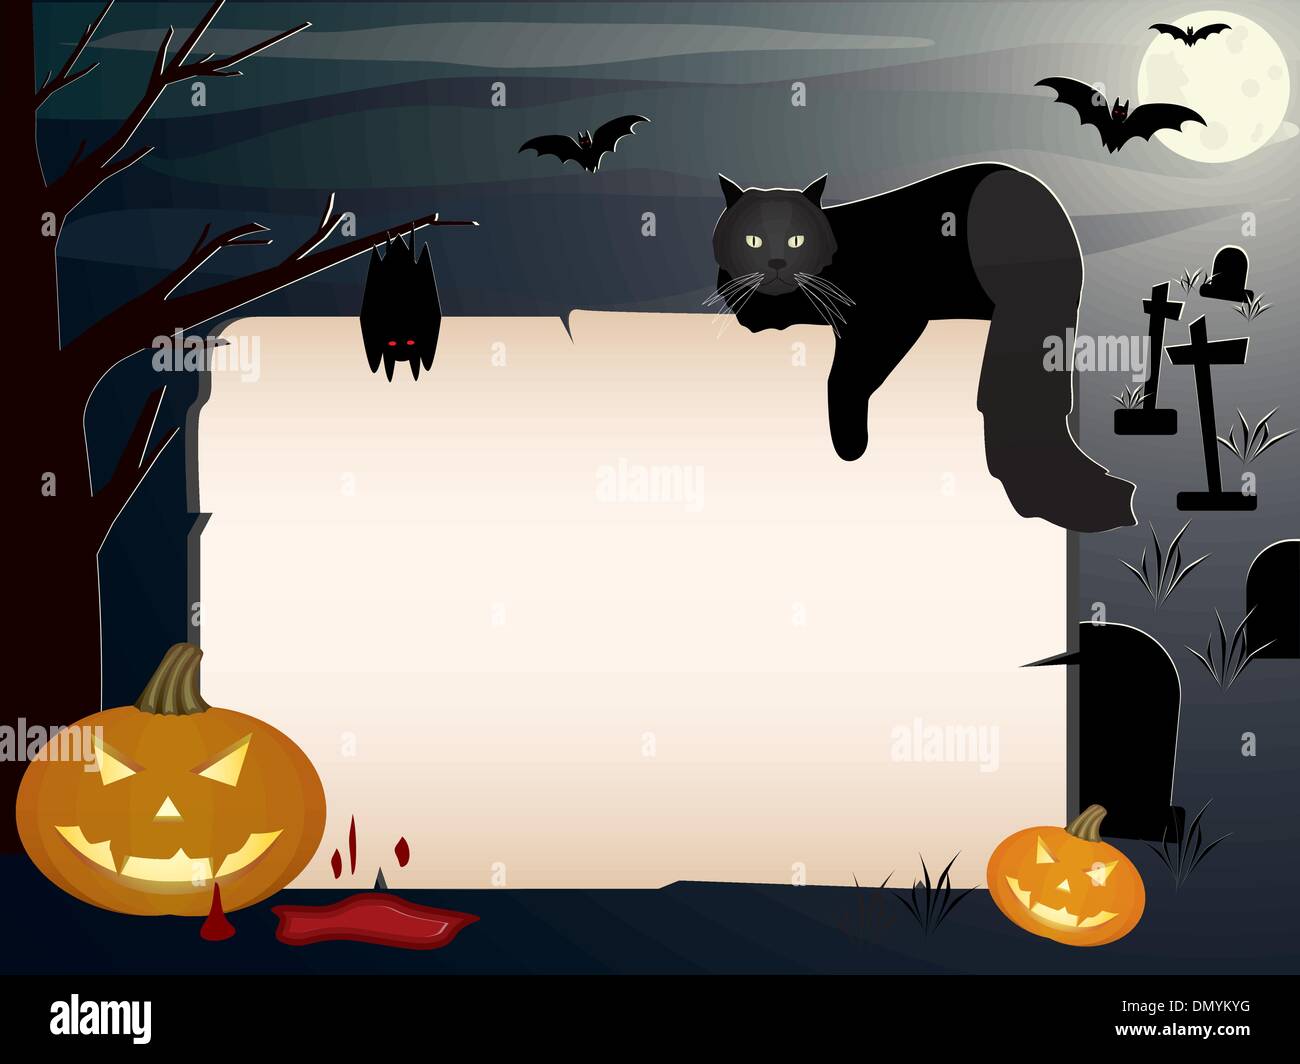 Halloween background Stock Vector